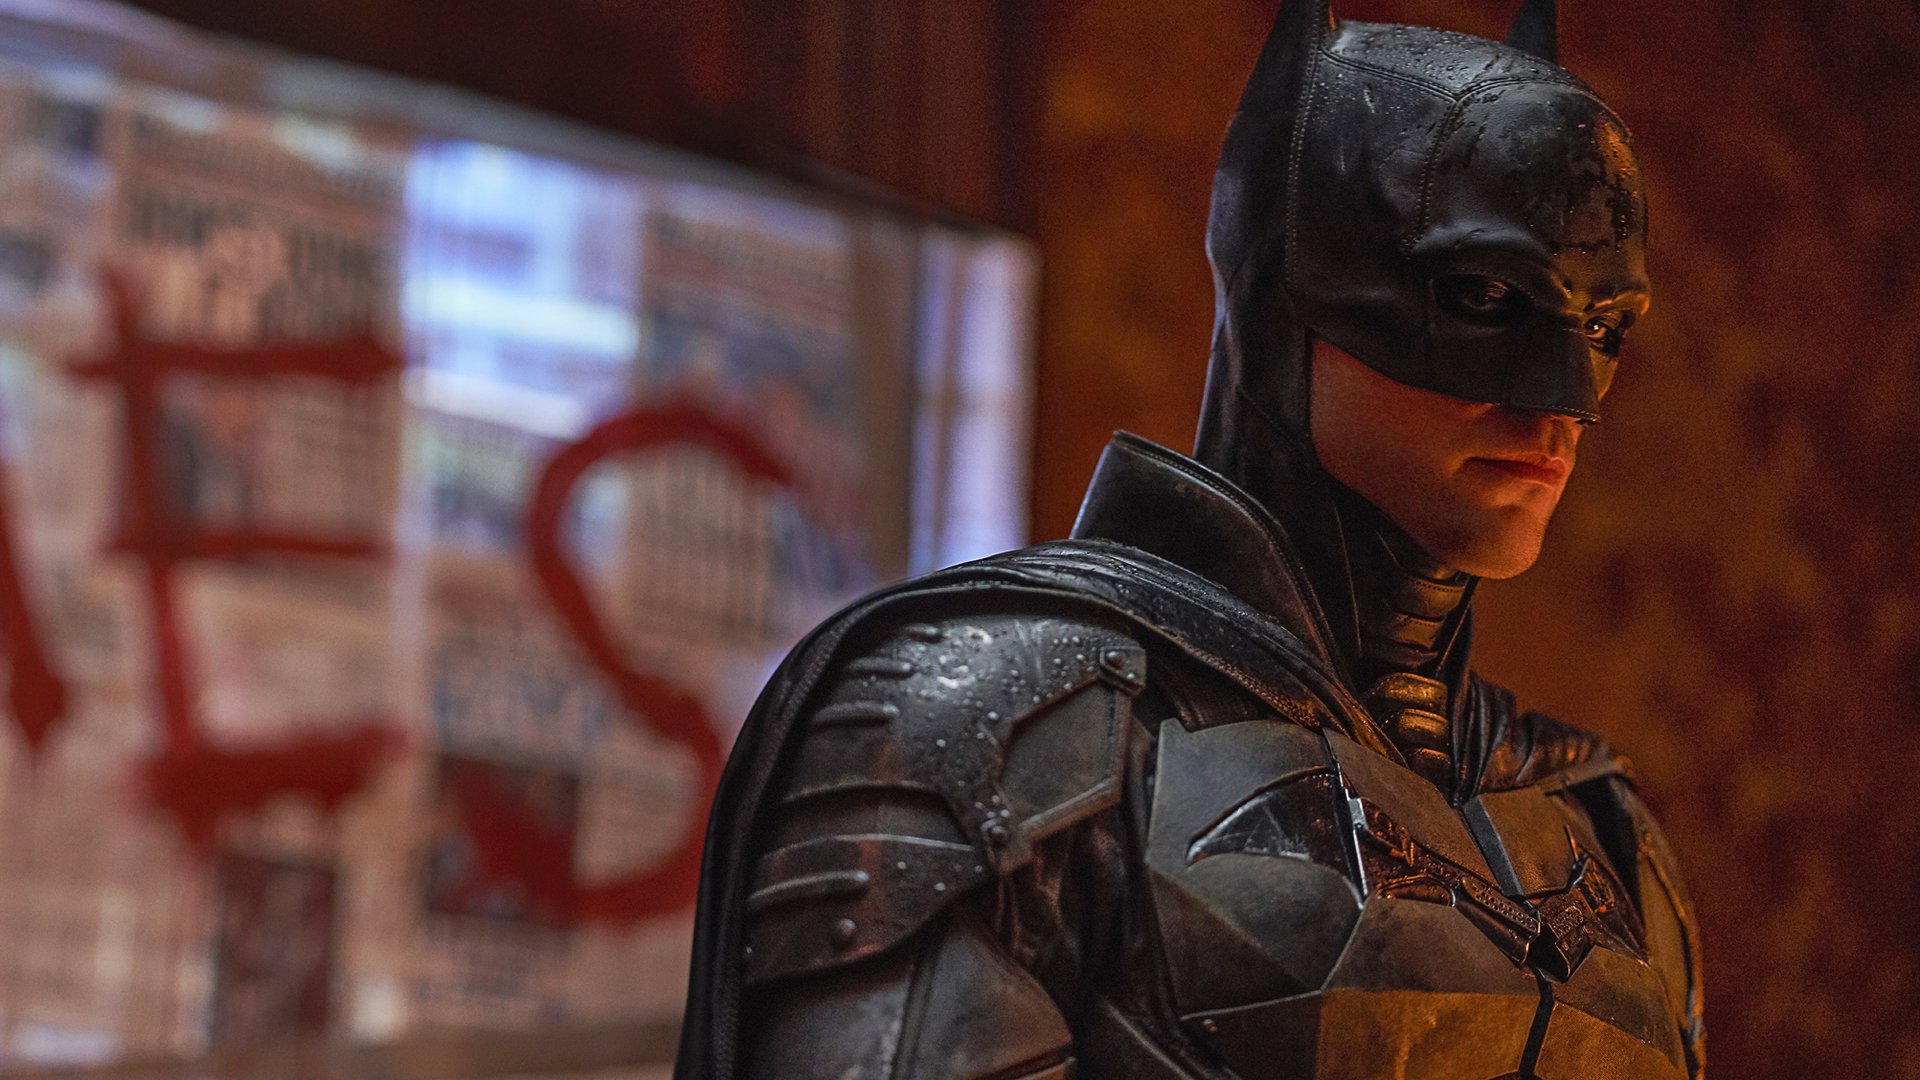 #Erstmals im Abo bei Amazon:  Endlich wieder ein guter Batman-Film